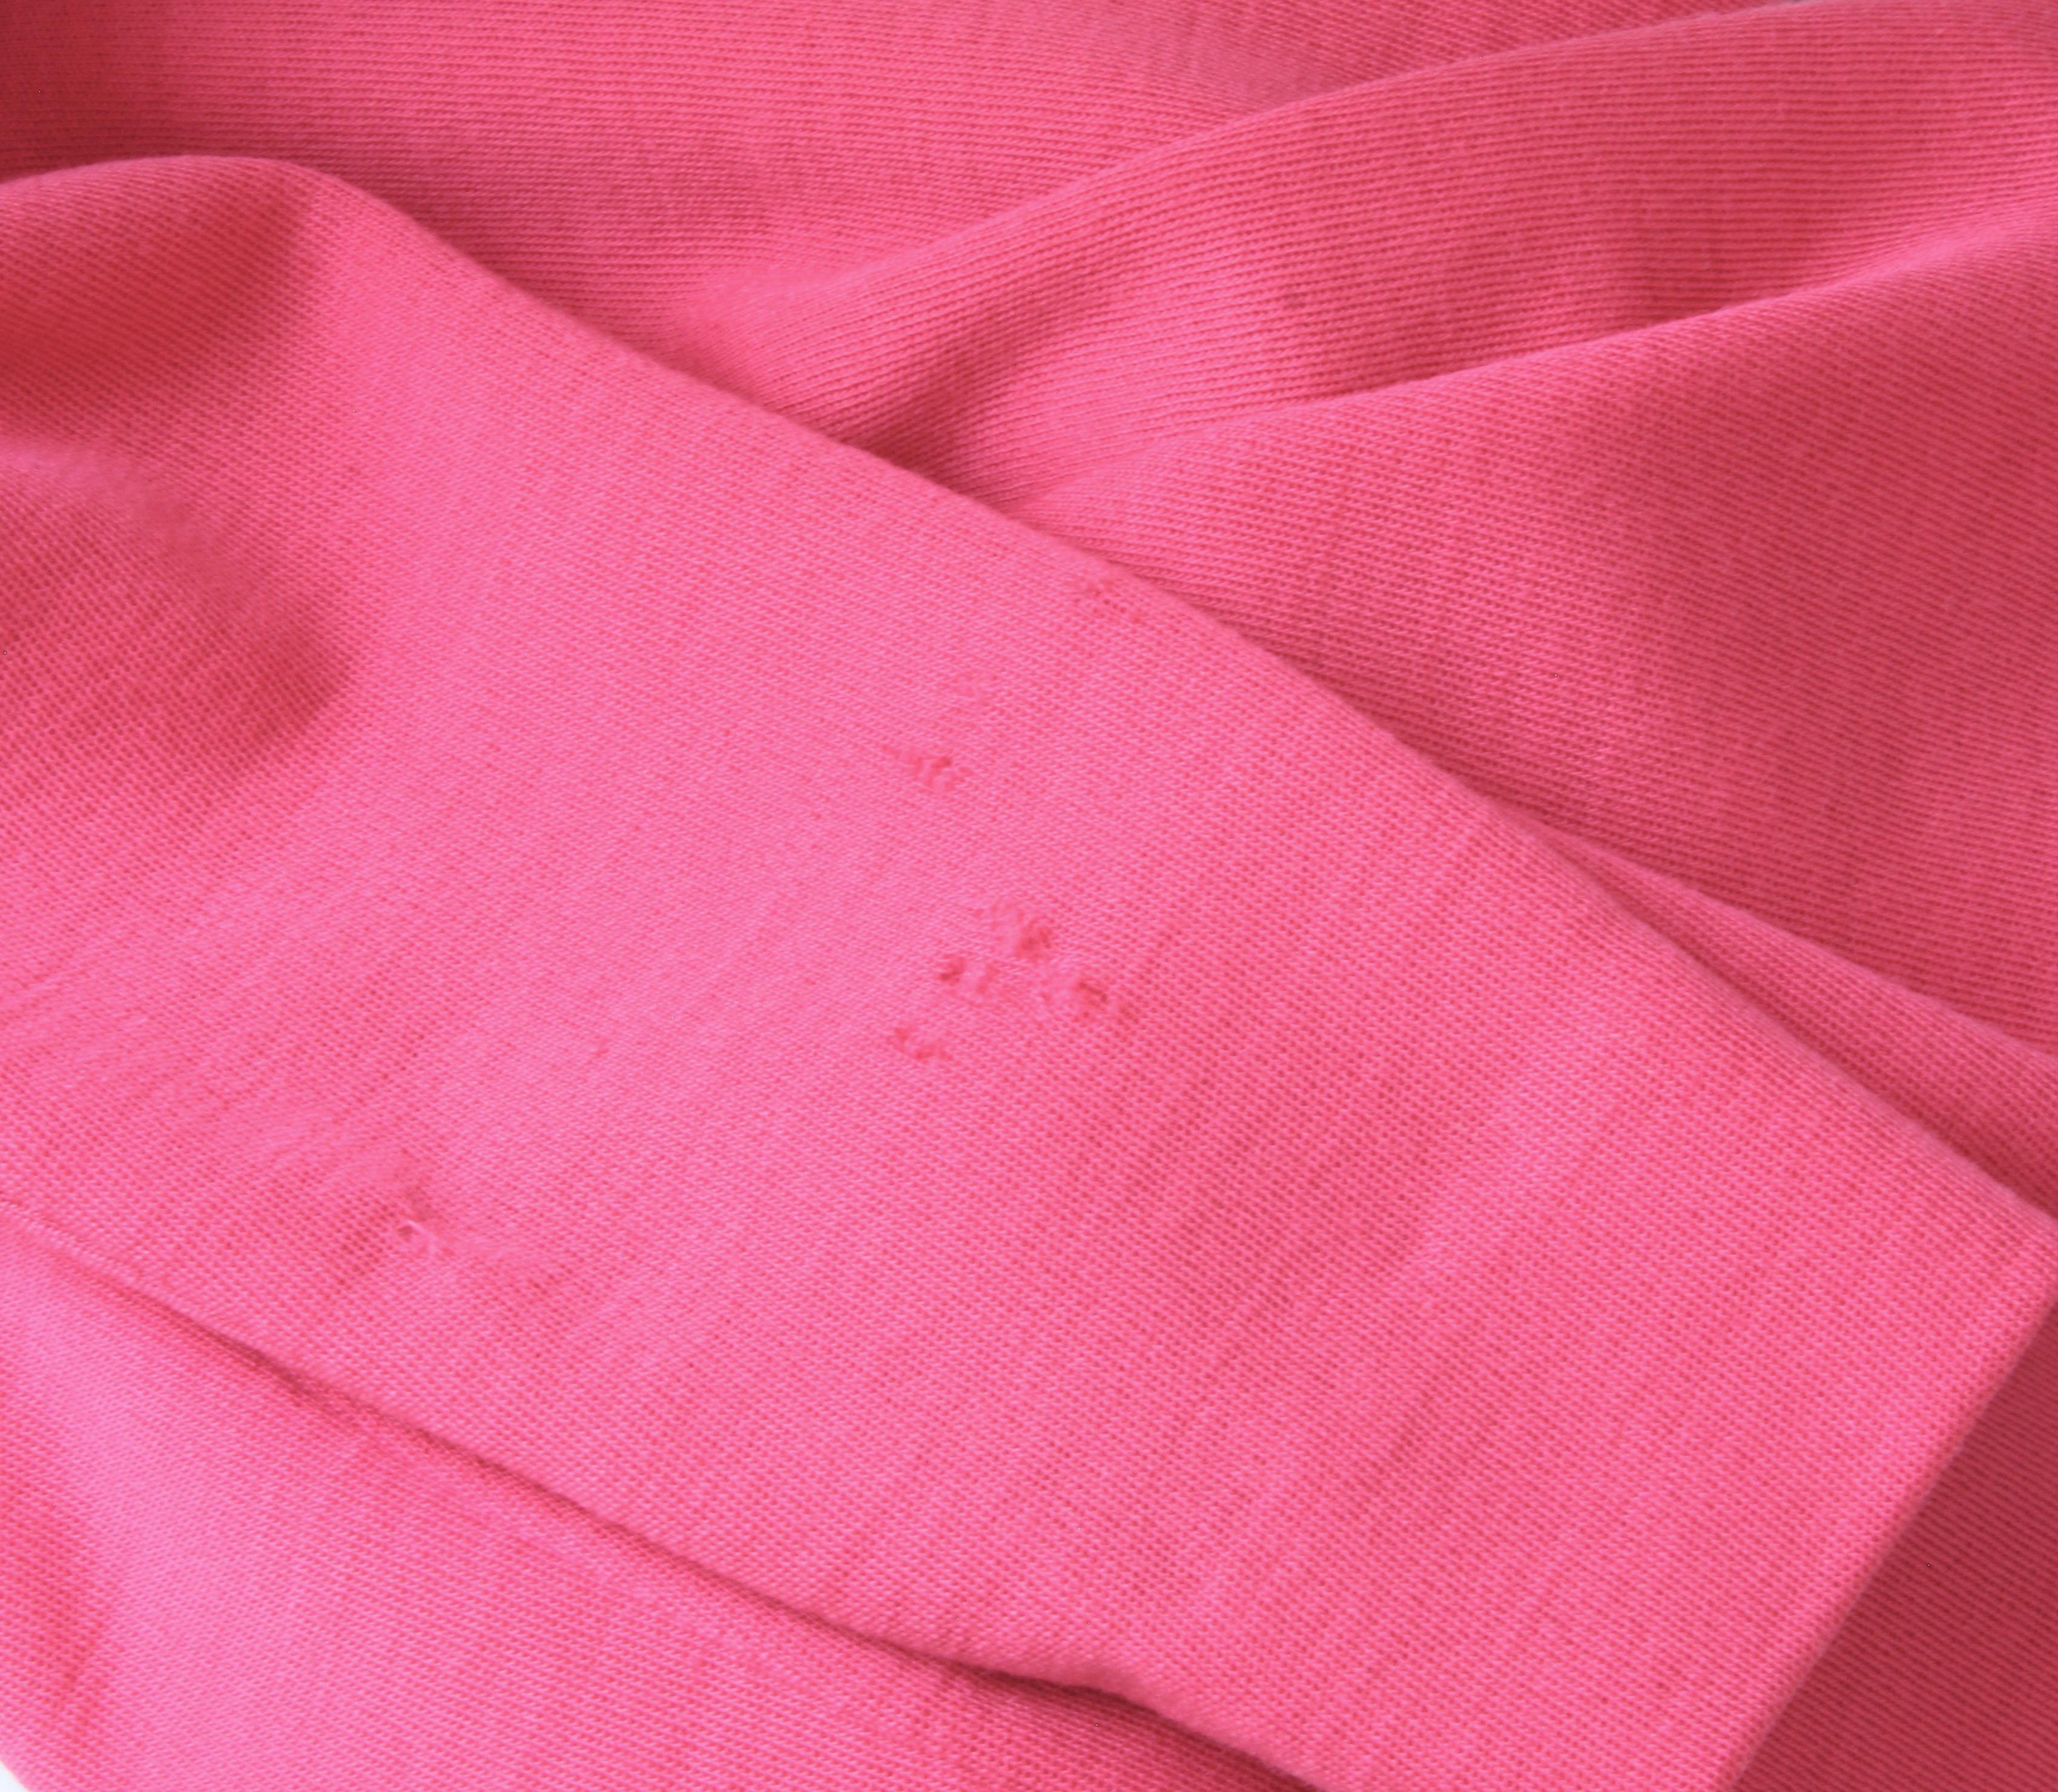 Bonnie Cashin Suit Pink Knit 2pc Set Raglan Top and Skirt Vintage 1960s For Sale 3